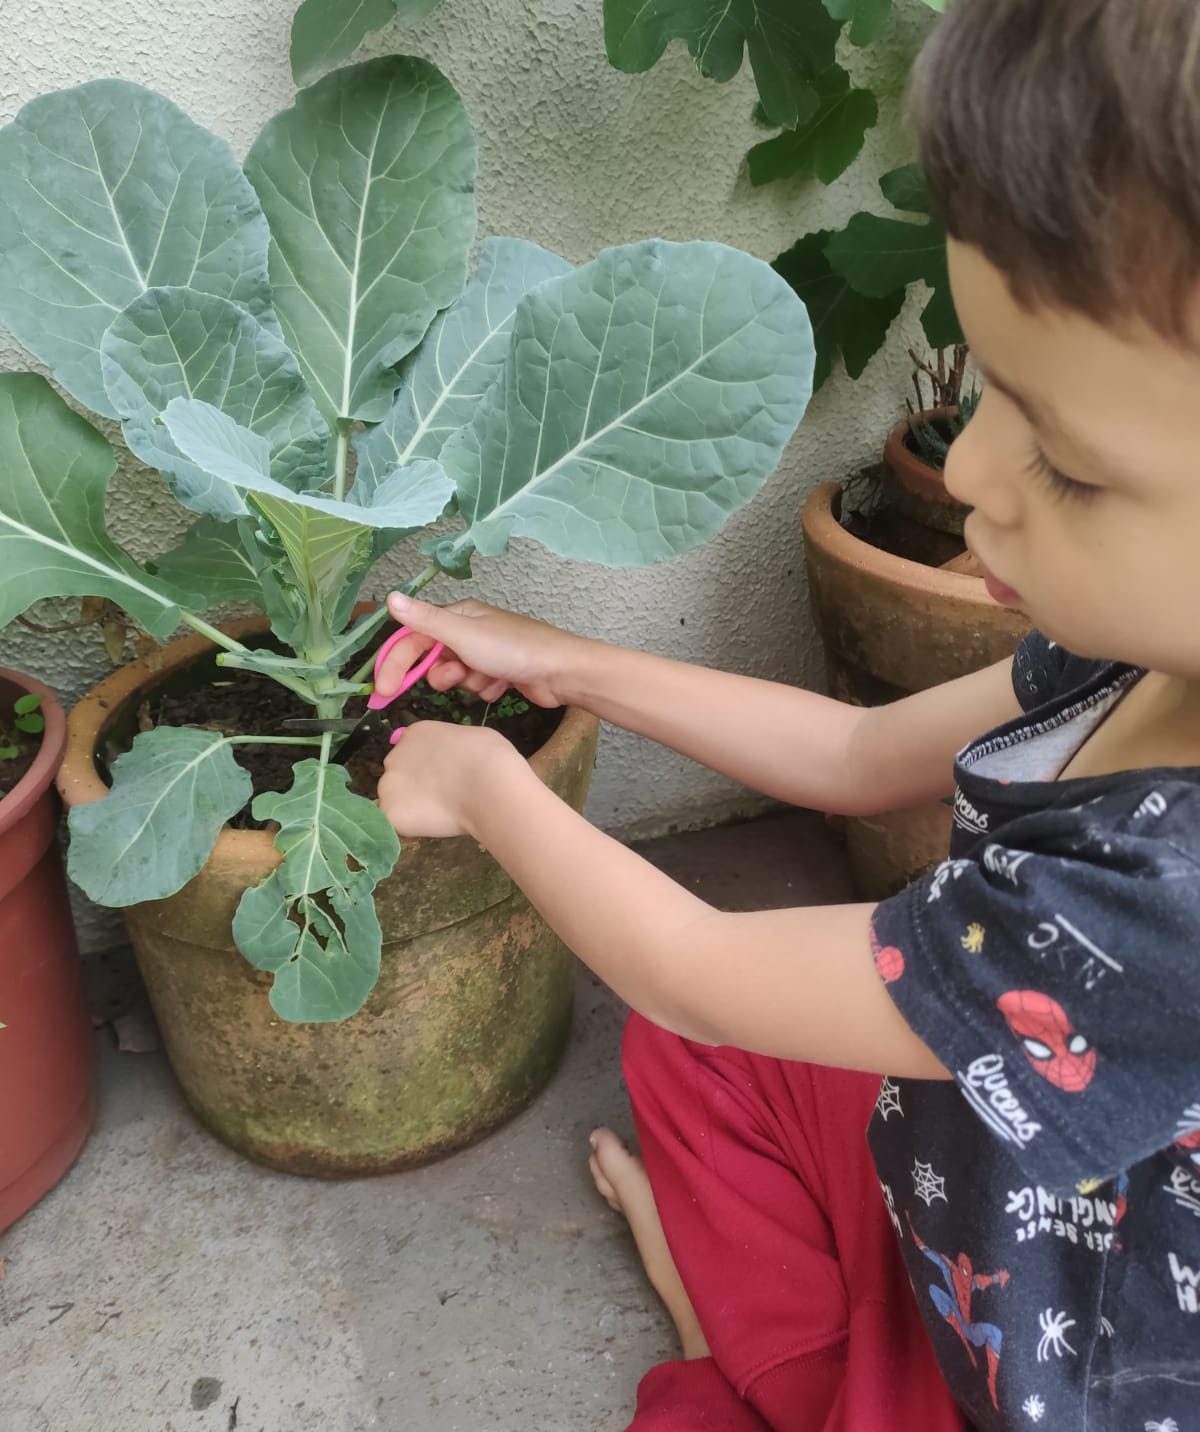 Criança colhendo uma couve plantada em um vaso.